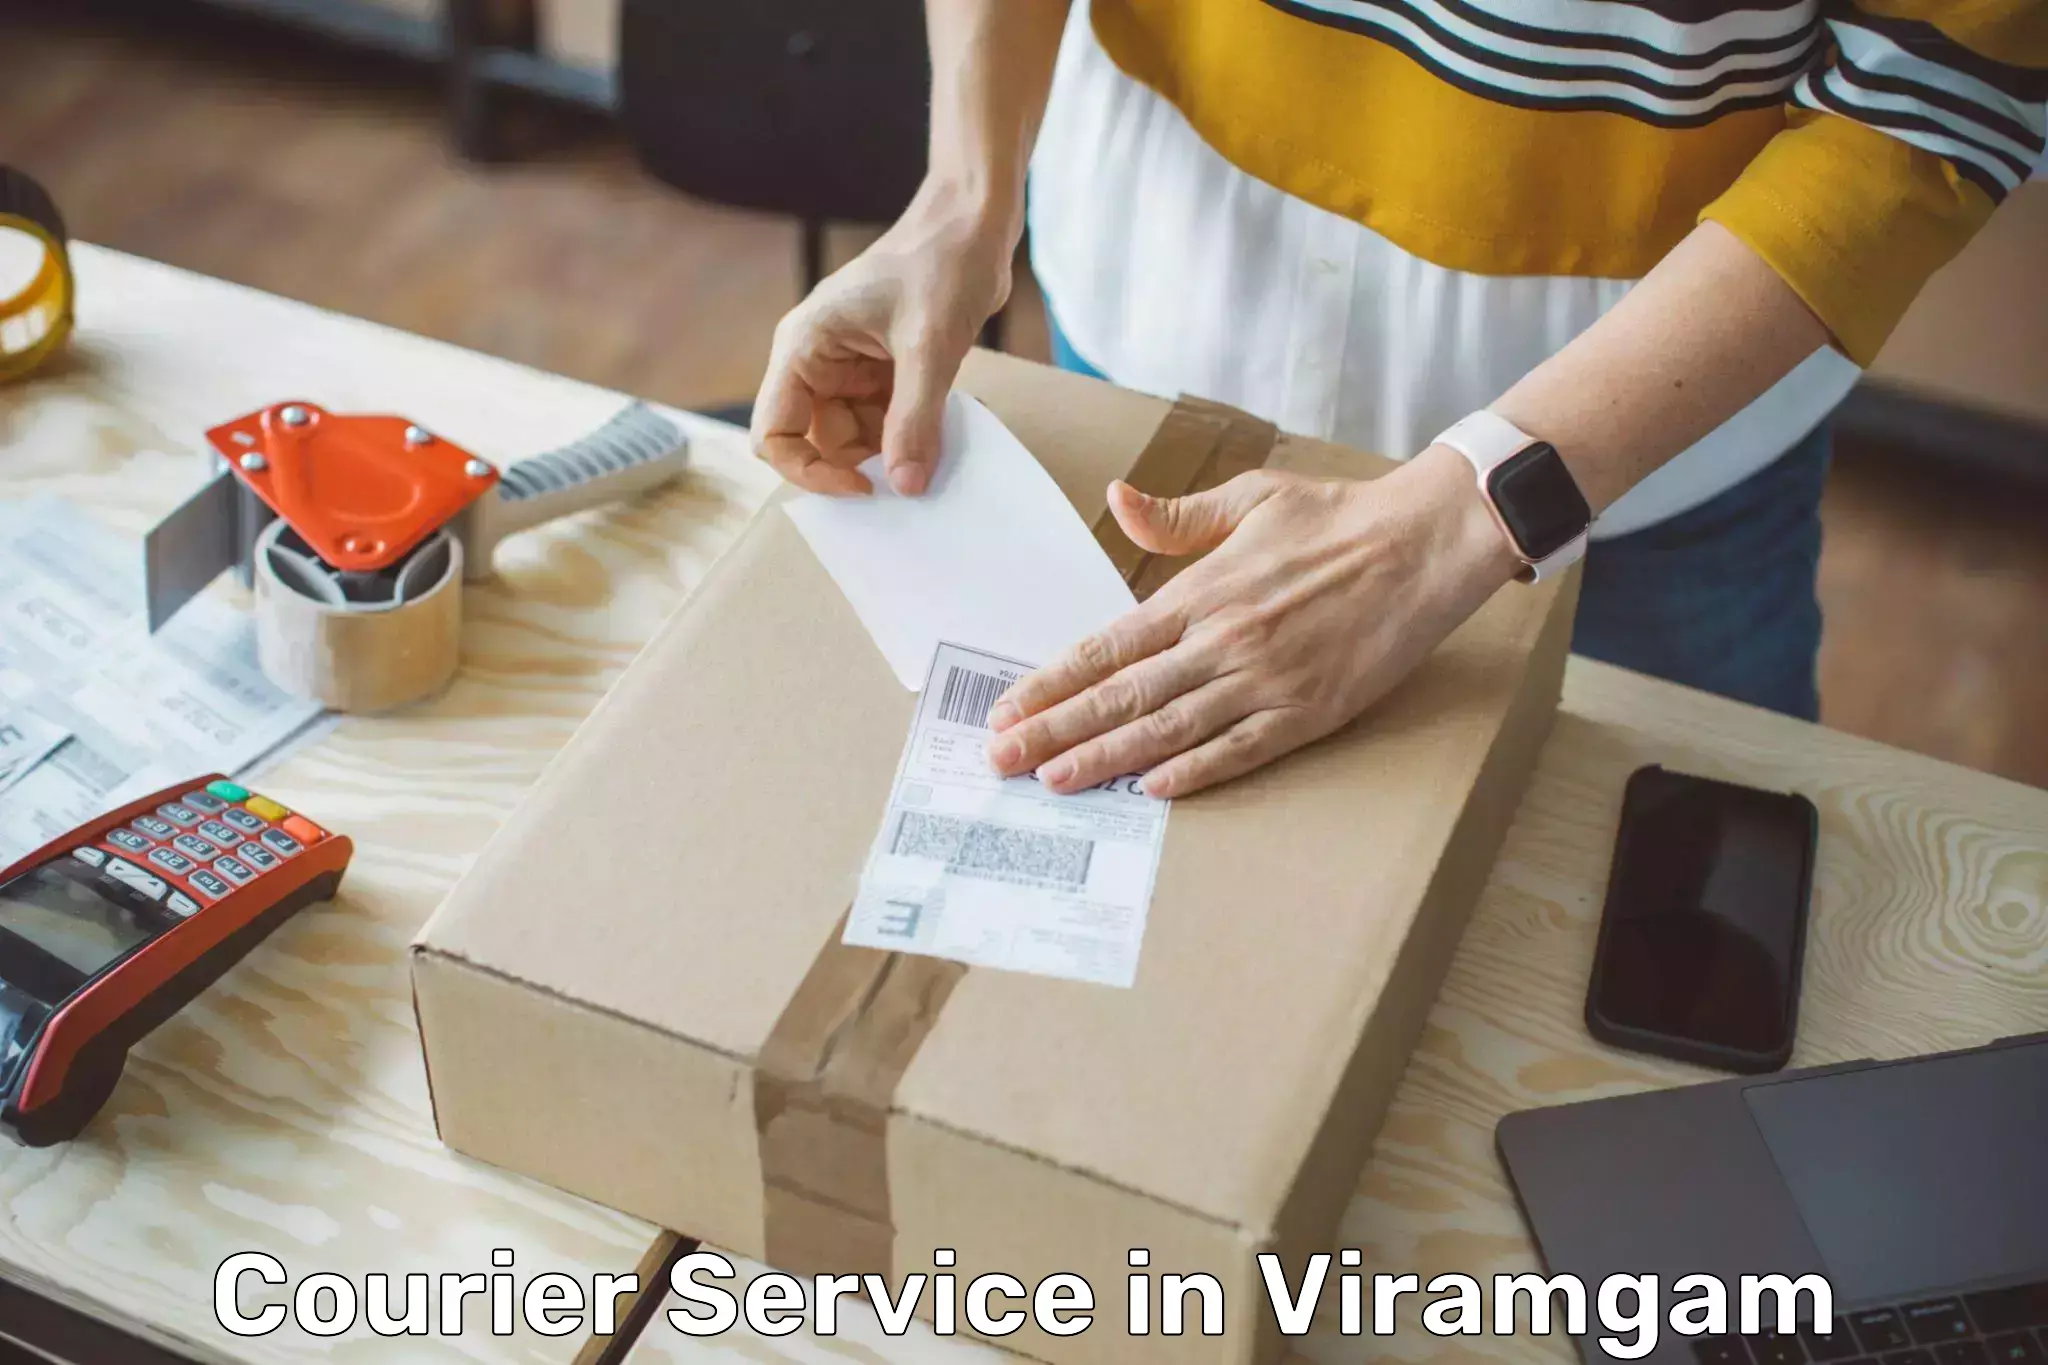 Fastest parcel delivery in Viramgam